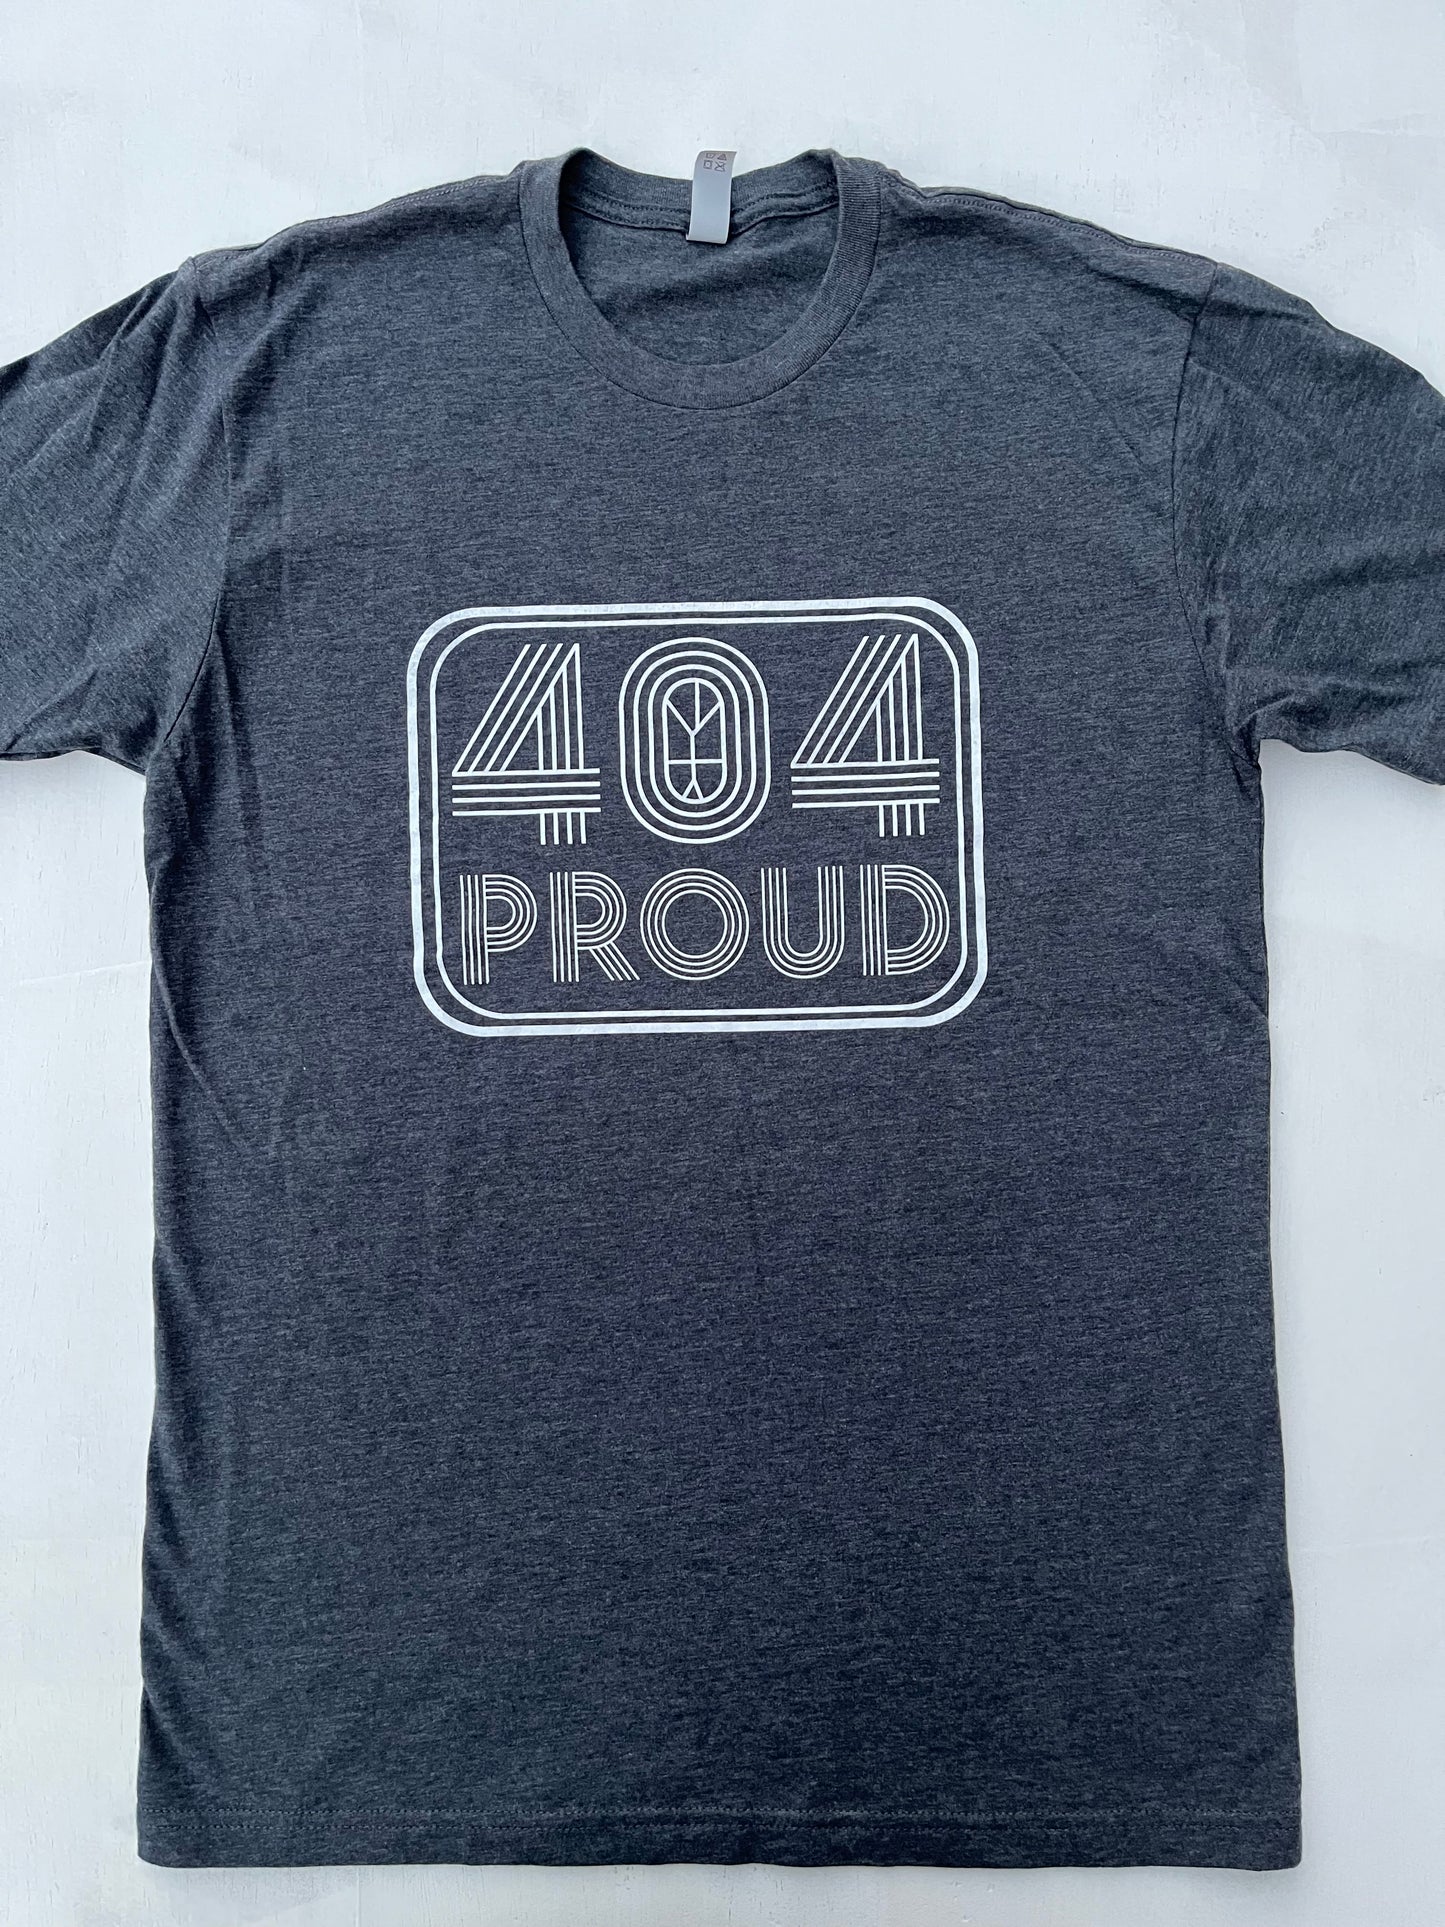 404 Proud Logo Tee (Men's/Unisex)